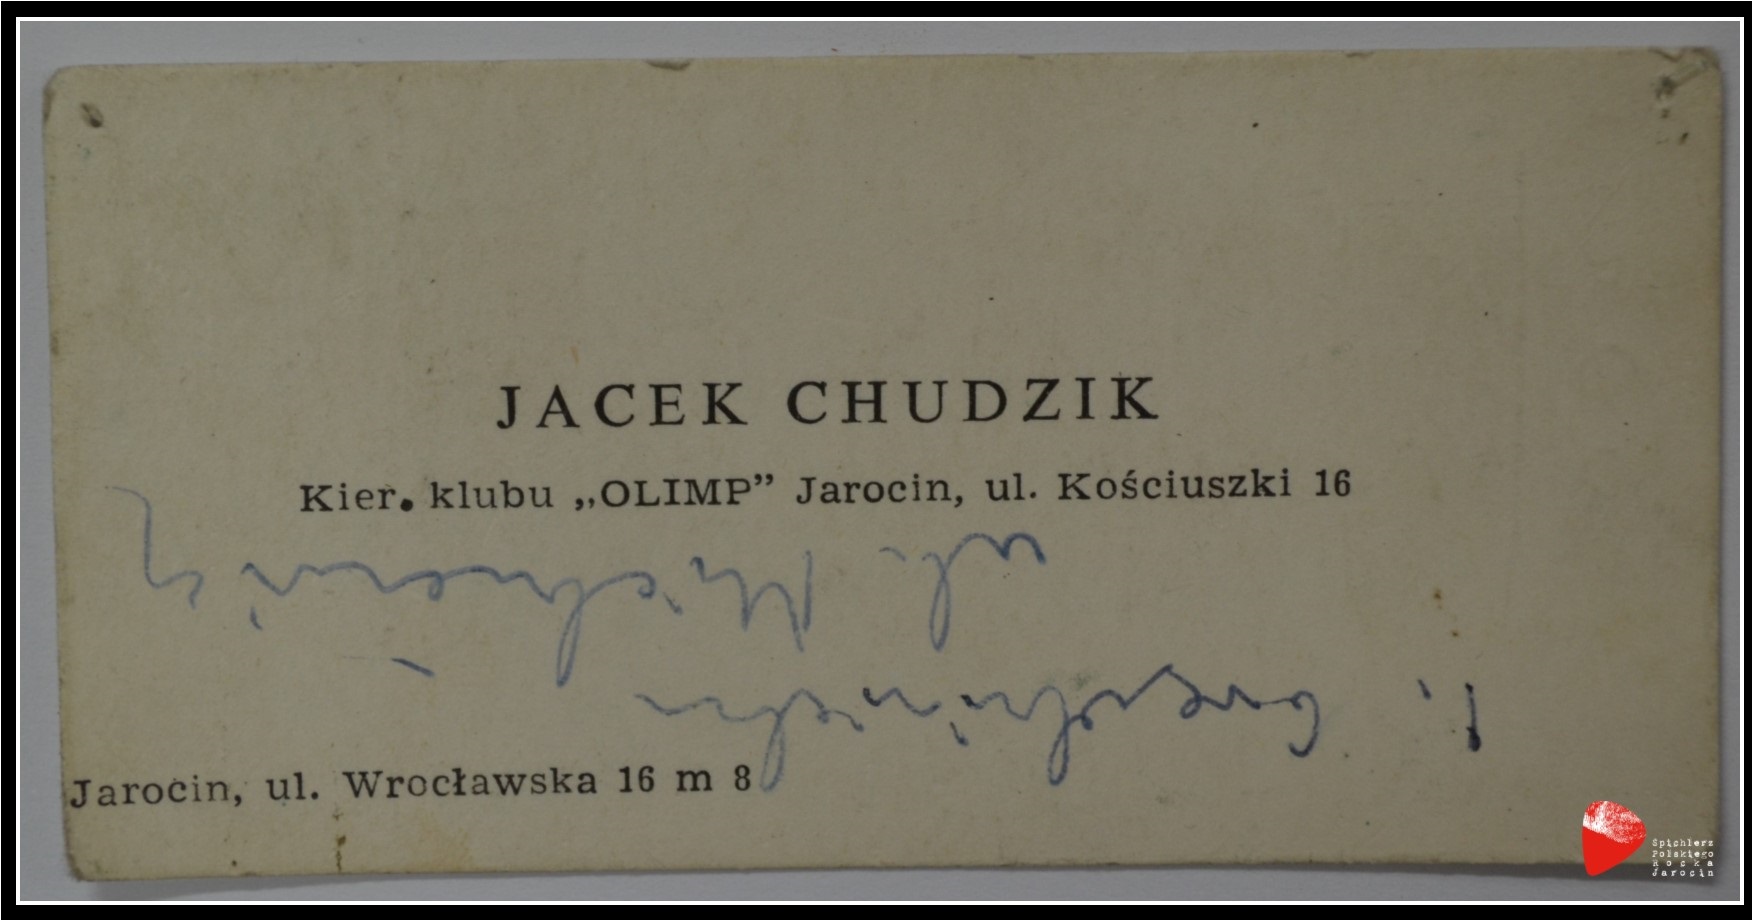 Wizytówka Jacka Chudzika.